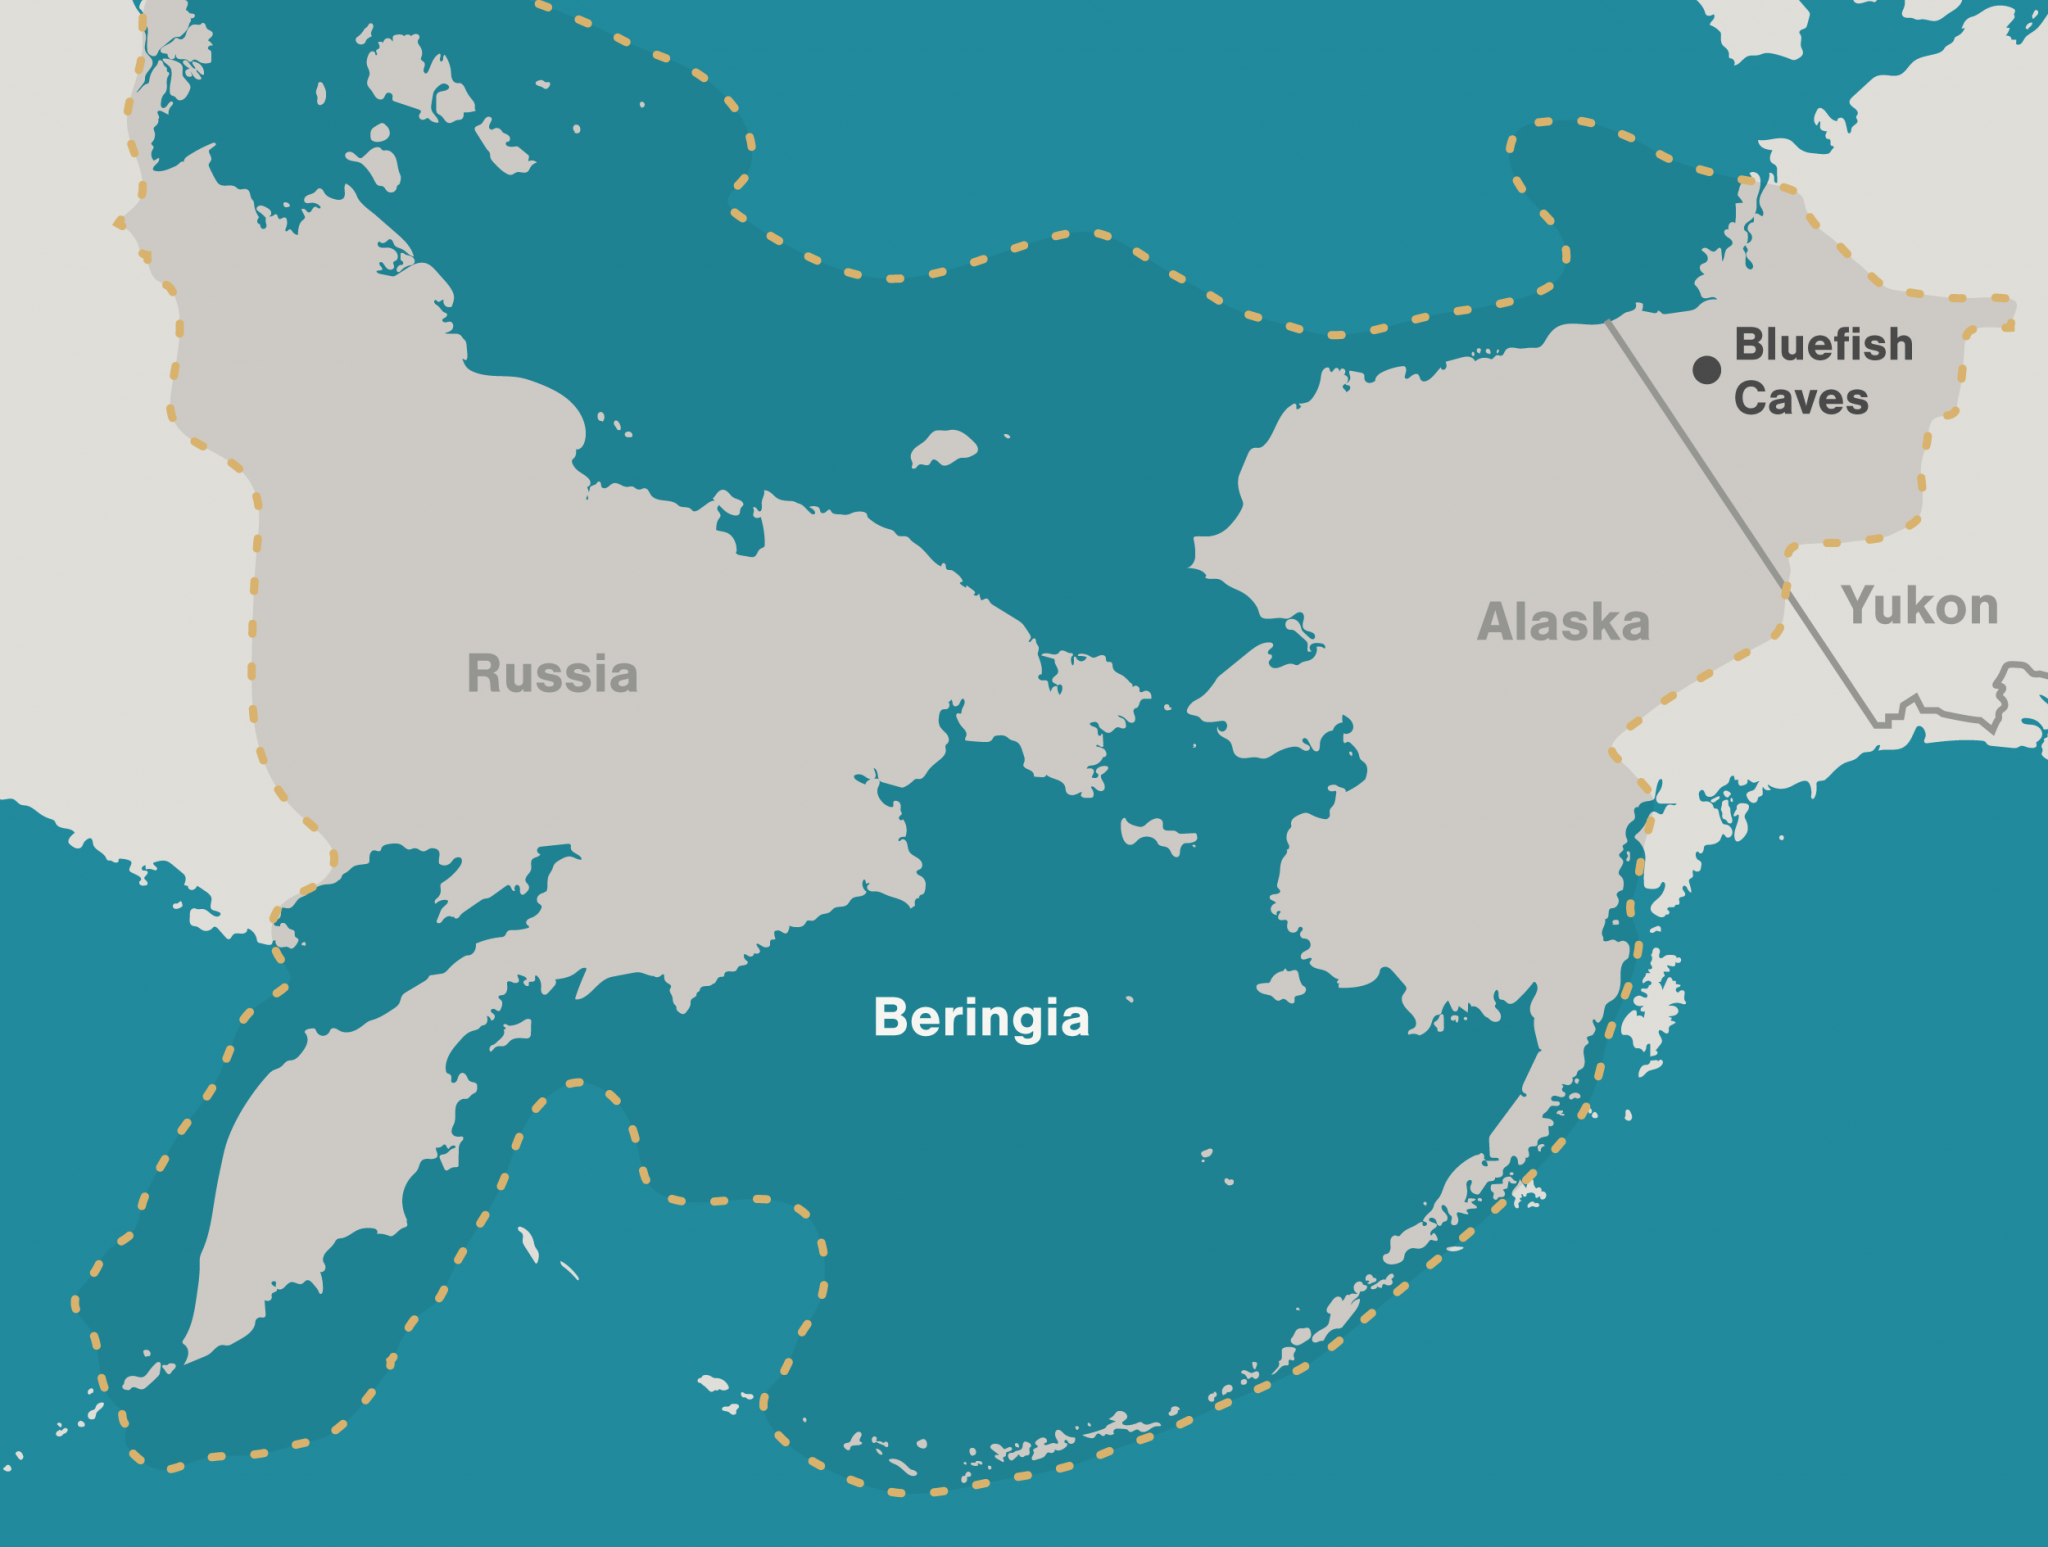 Asia between. Перешеек в Беринговом проливе. Северная Америка Берингов пролив. Аляска Берингов пролив. Сухопутный мост Берингия.